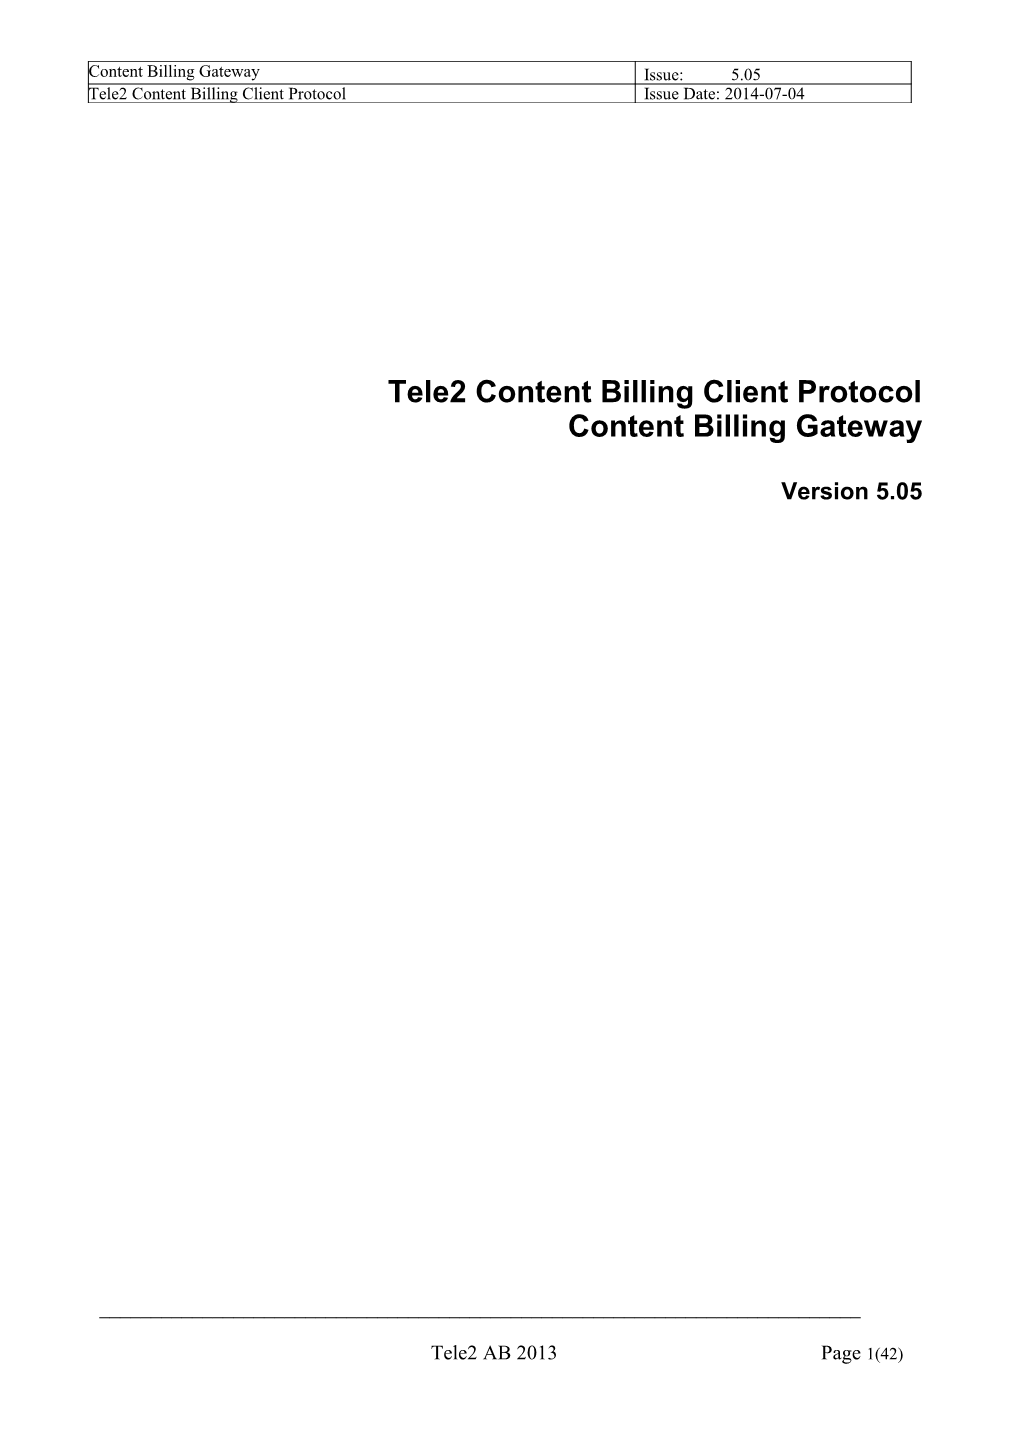 Tele2 Content Billing Client Protocol